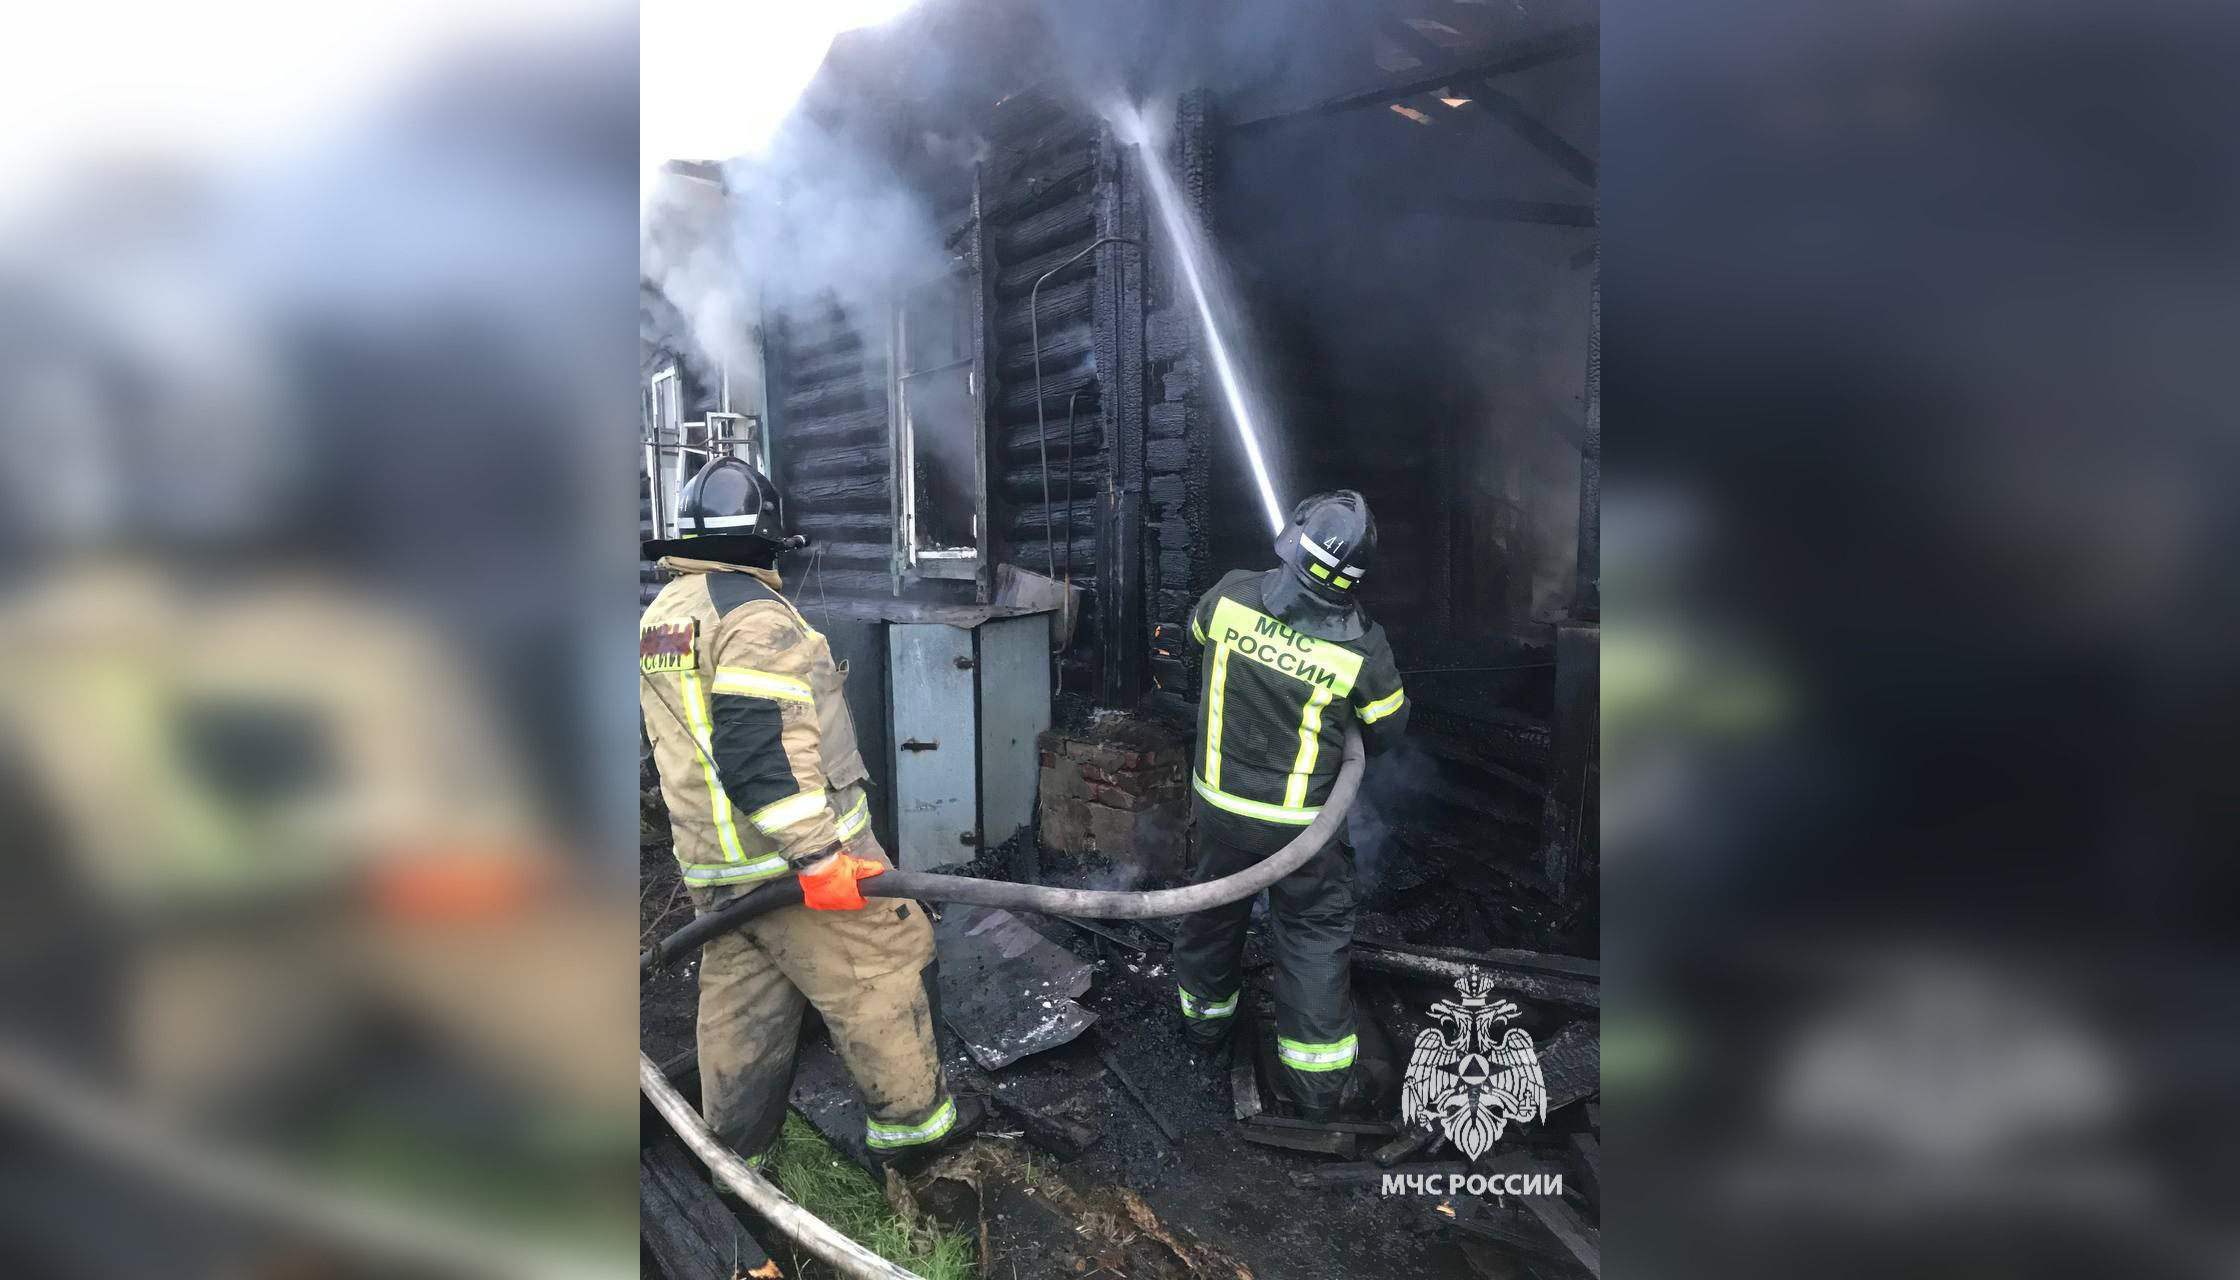 Названа причина пожара в Сосновоборске, где сгорели 2 дома и надворные постройки